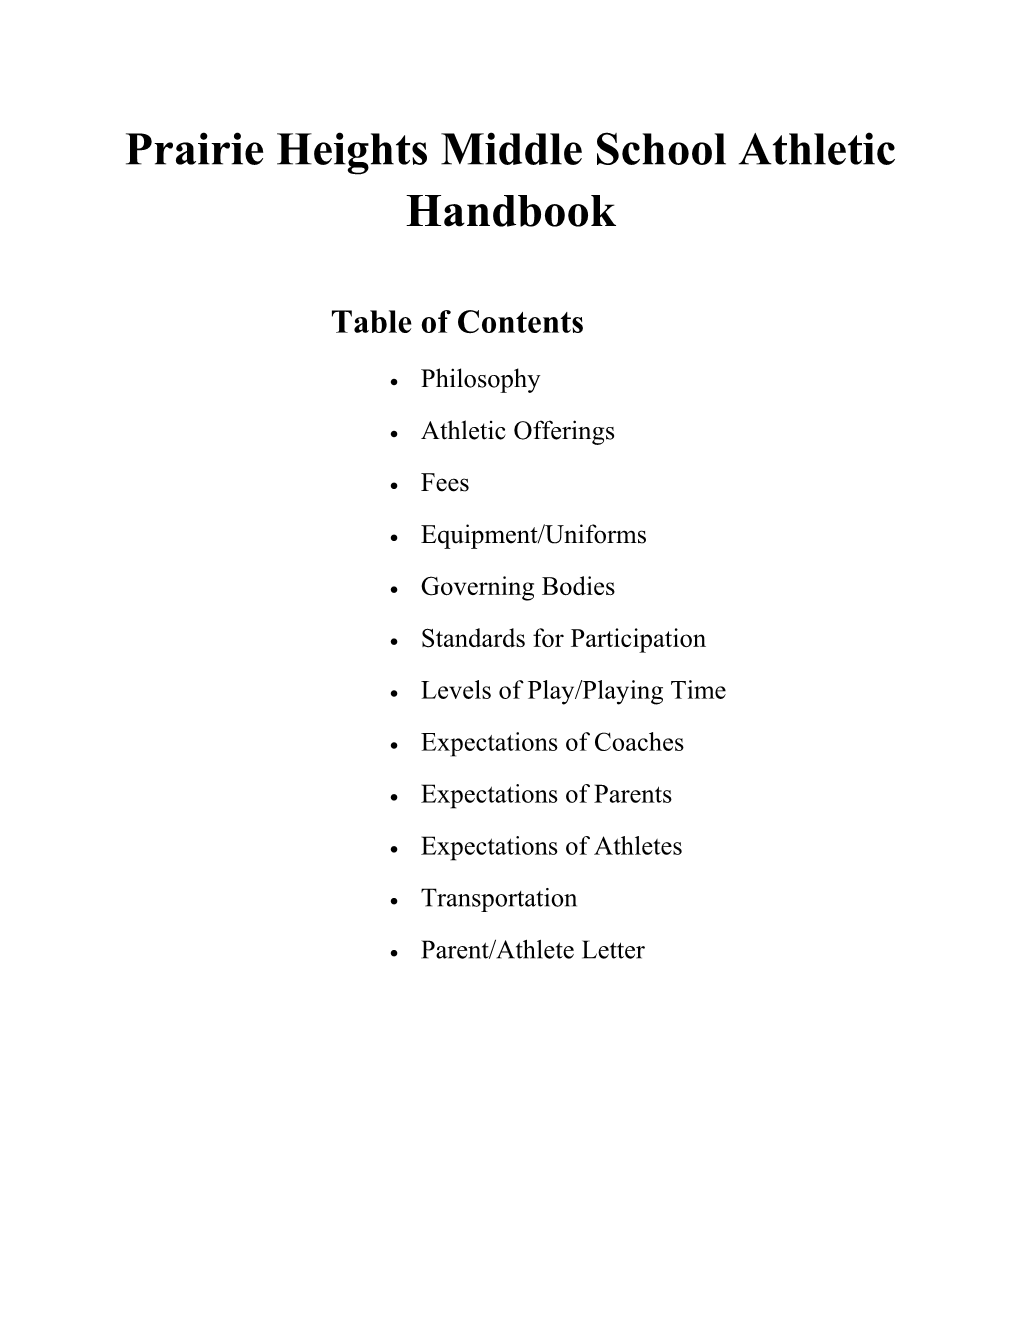 Prairie Heights Middle School Athletic Handbook